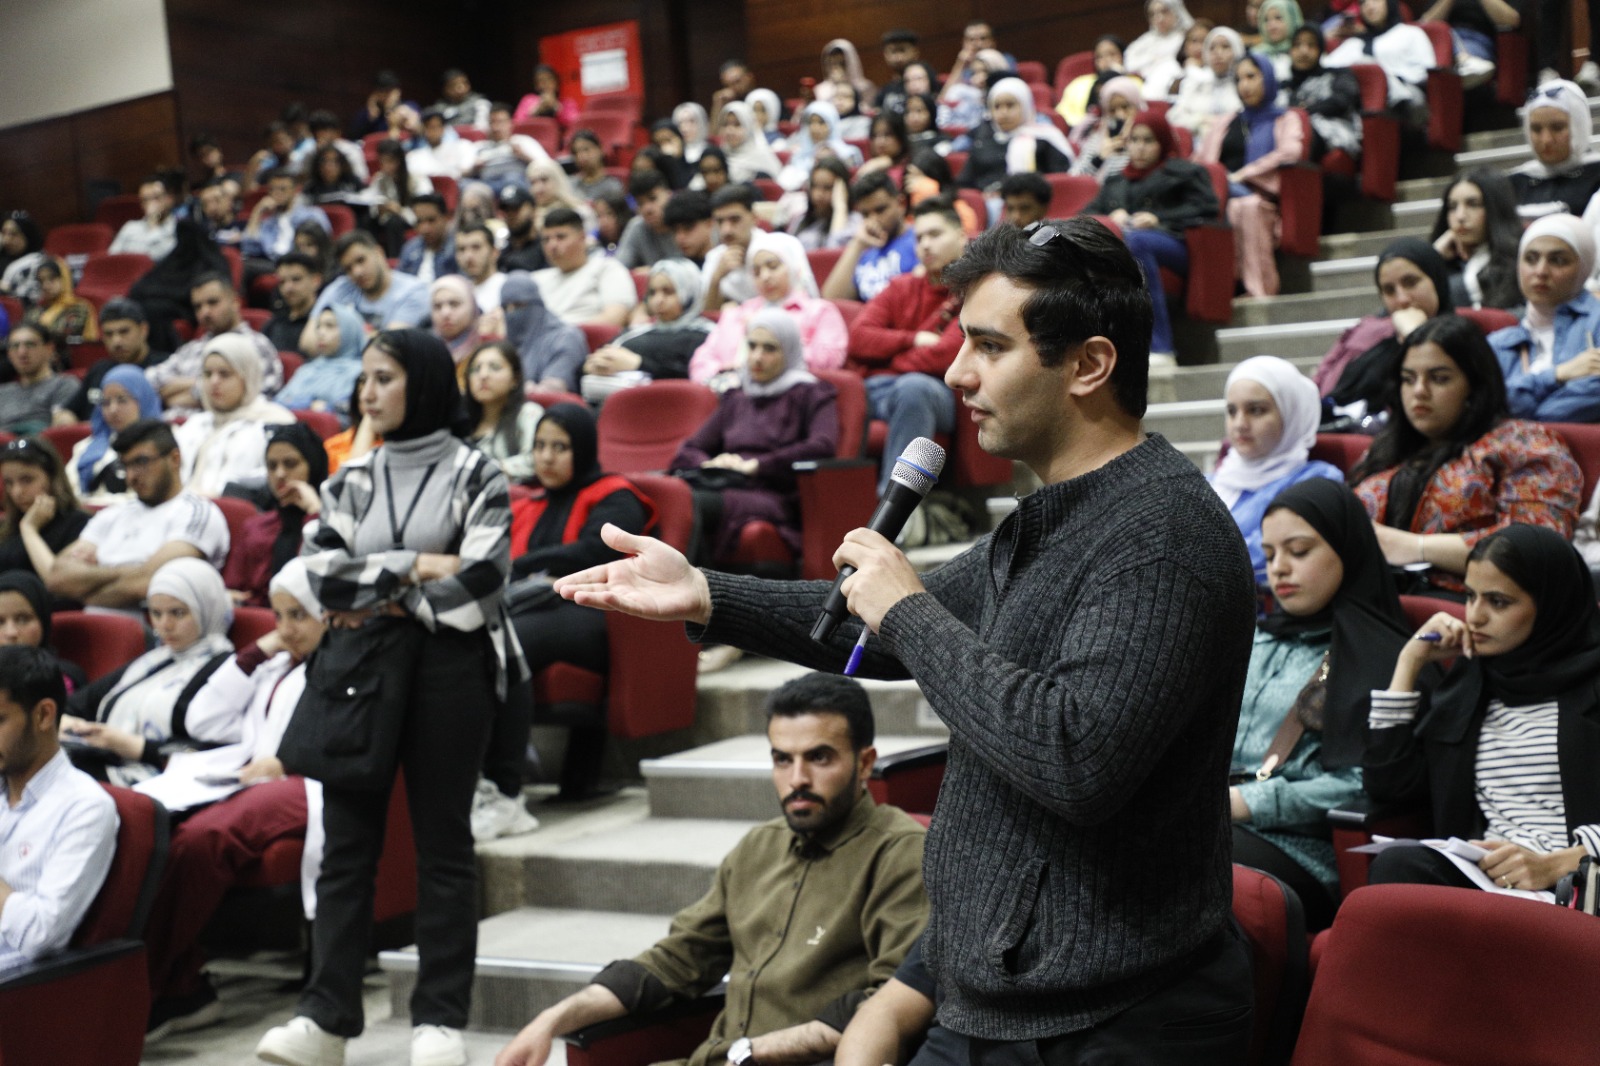 حوارية حزبية تزود طلبة “الشرق الأوسط” بأسس الديمقراطية النشطة